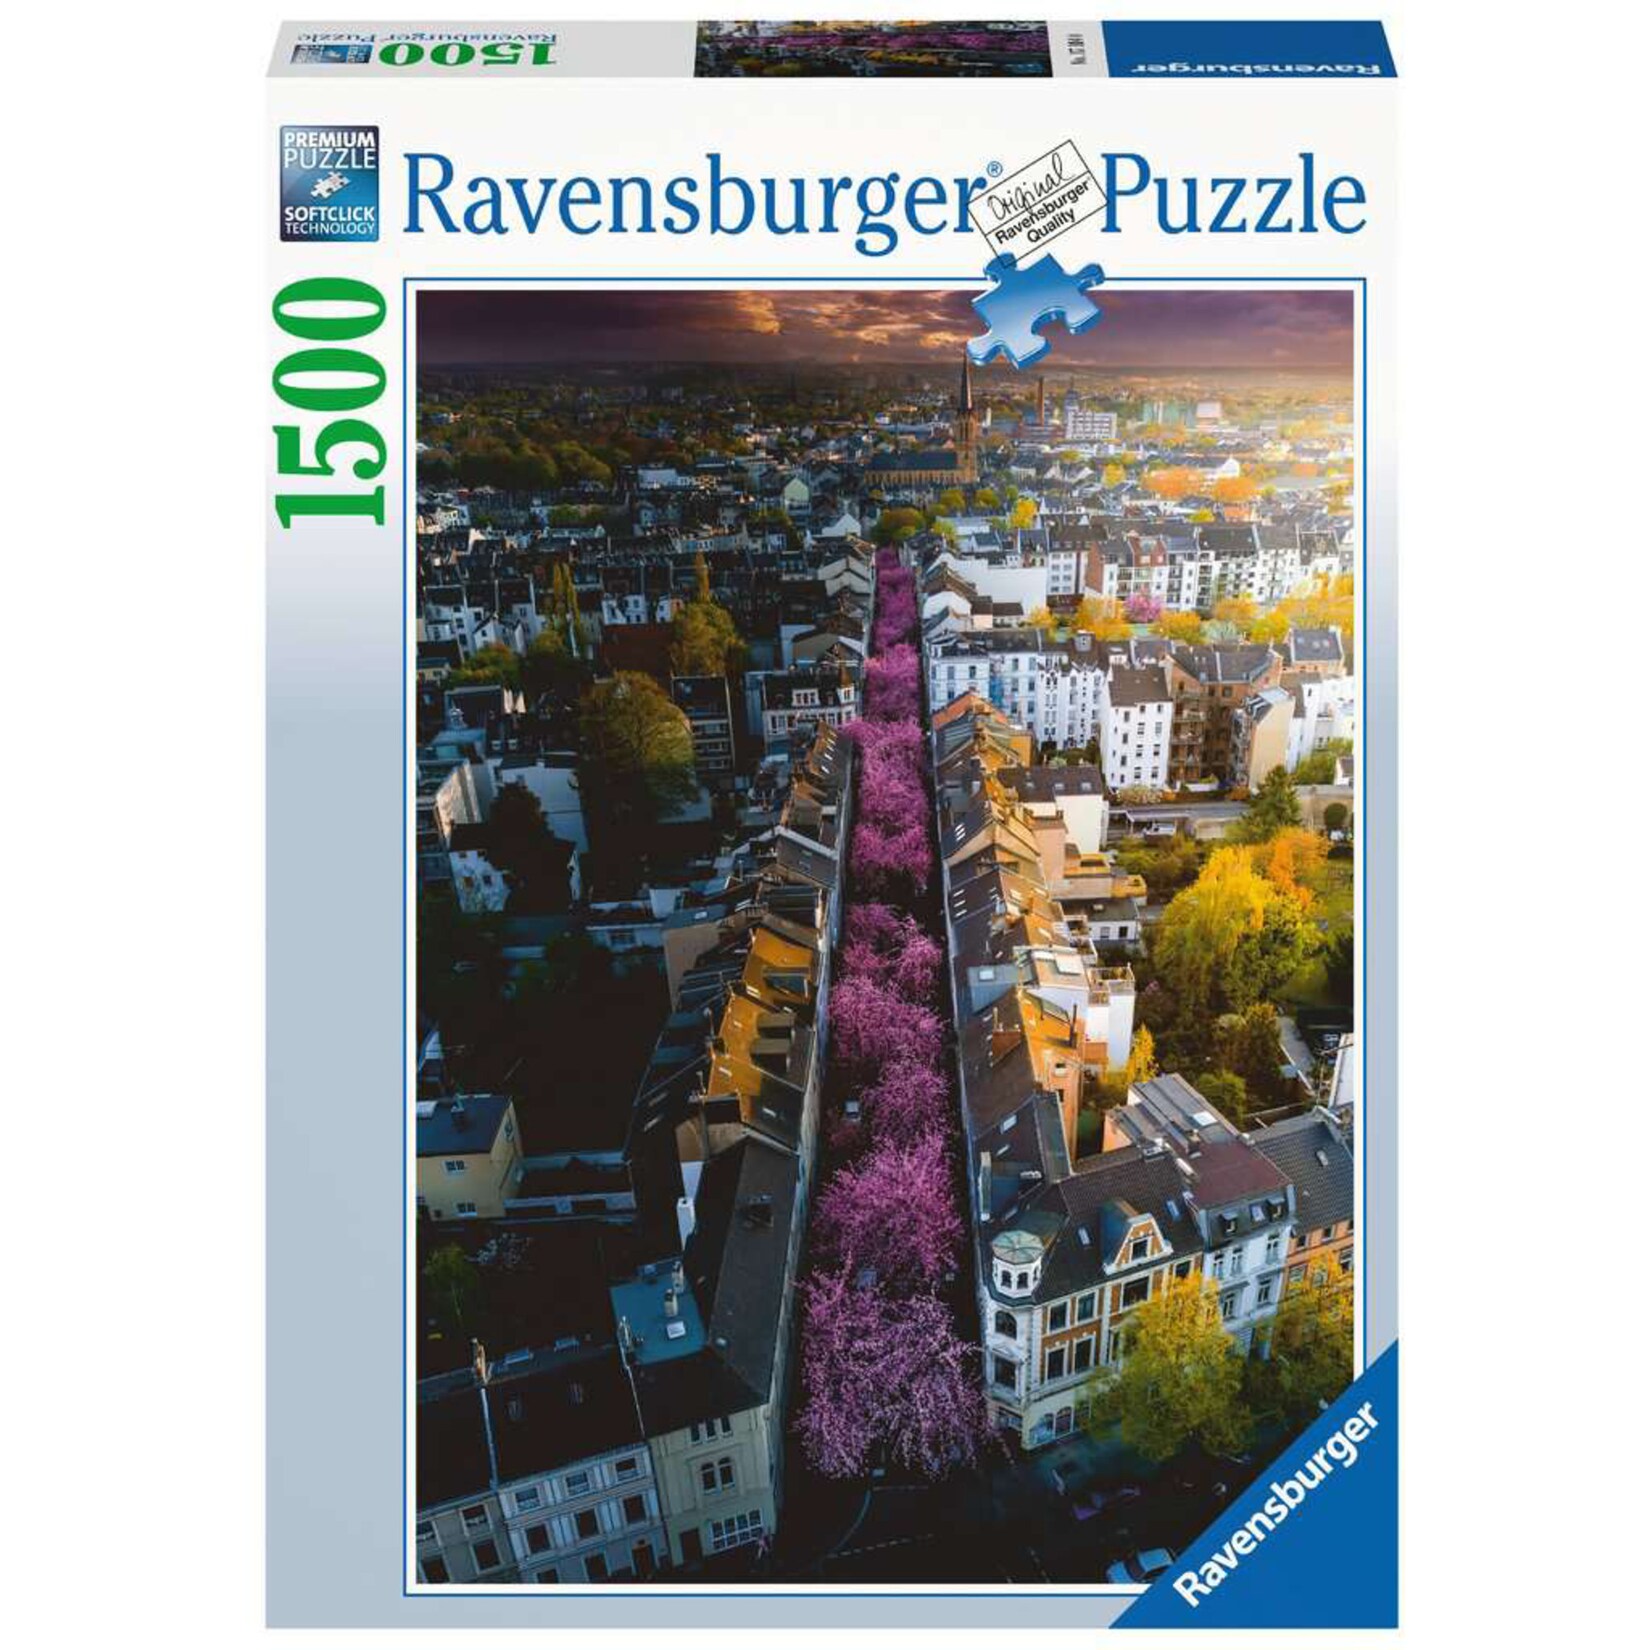 Ravensburger Puzzle Puzzle: Blühendes Bonn (1500 Teile)